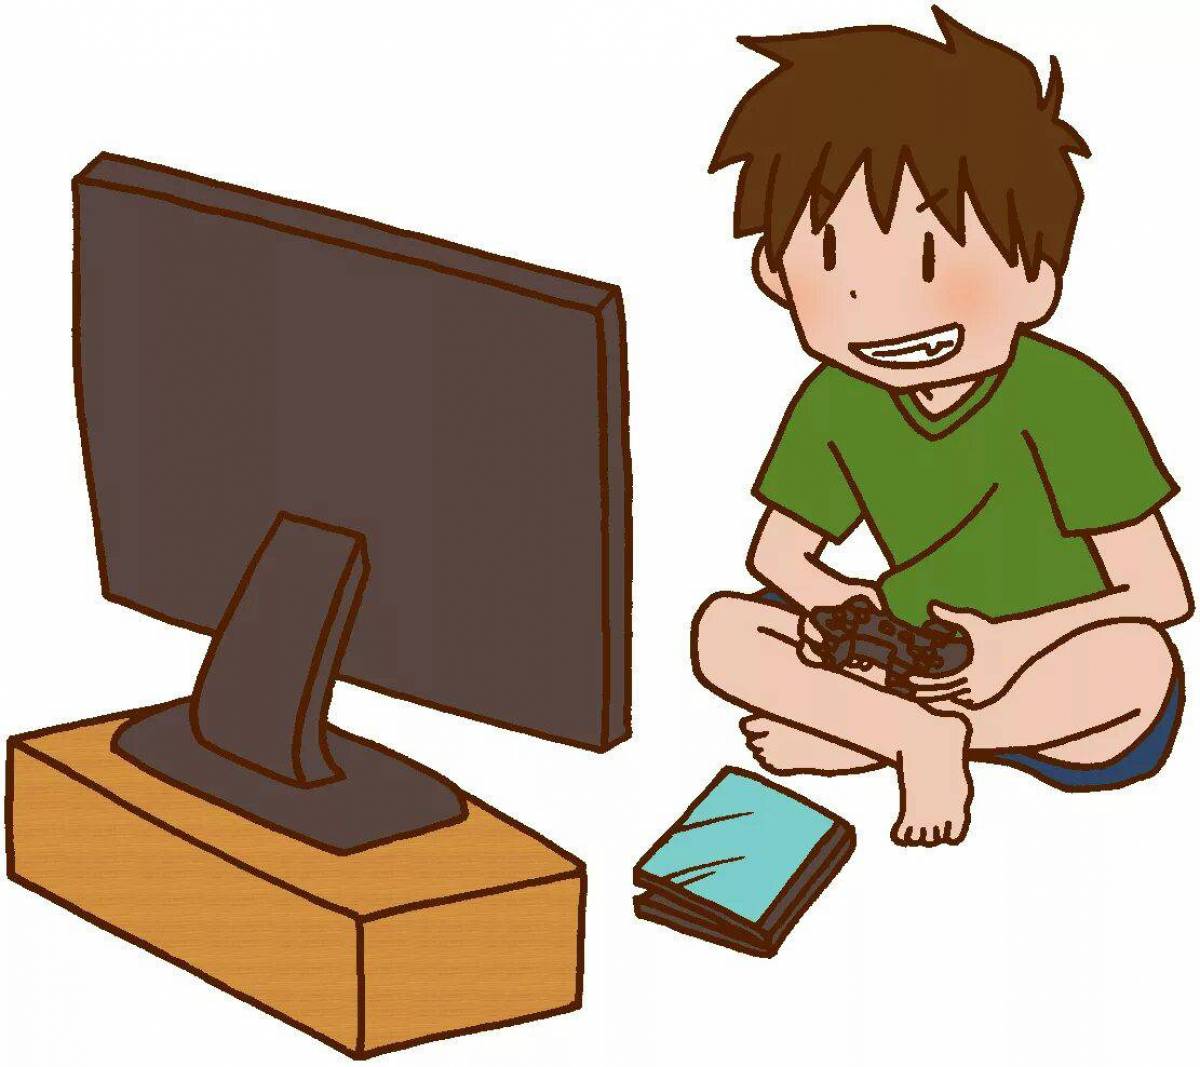 Игры нарисованный мальчик. Мальчик играющий в компьютерную игру. Дети играющие в компьютерные игры. Компьютер картинка для детей. Компьютер мультяшный.